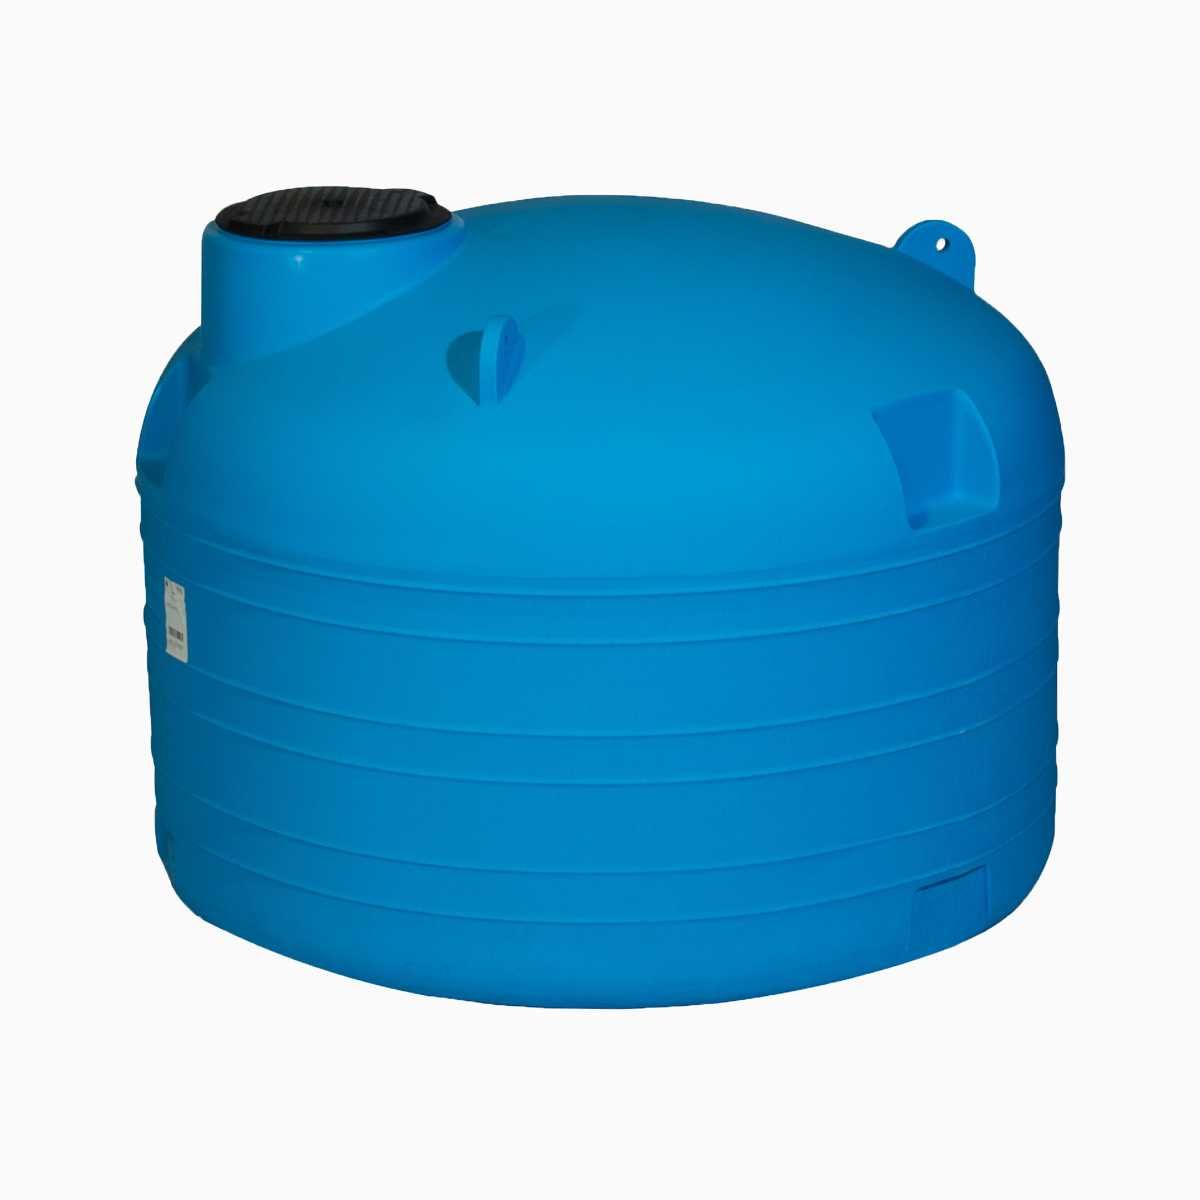 Rezervor suprateran cilindric orizontal 2000 litri (tip cisterna)